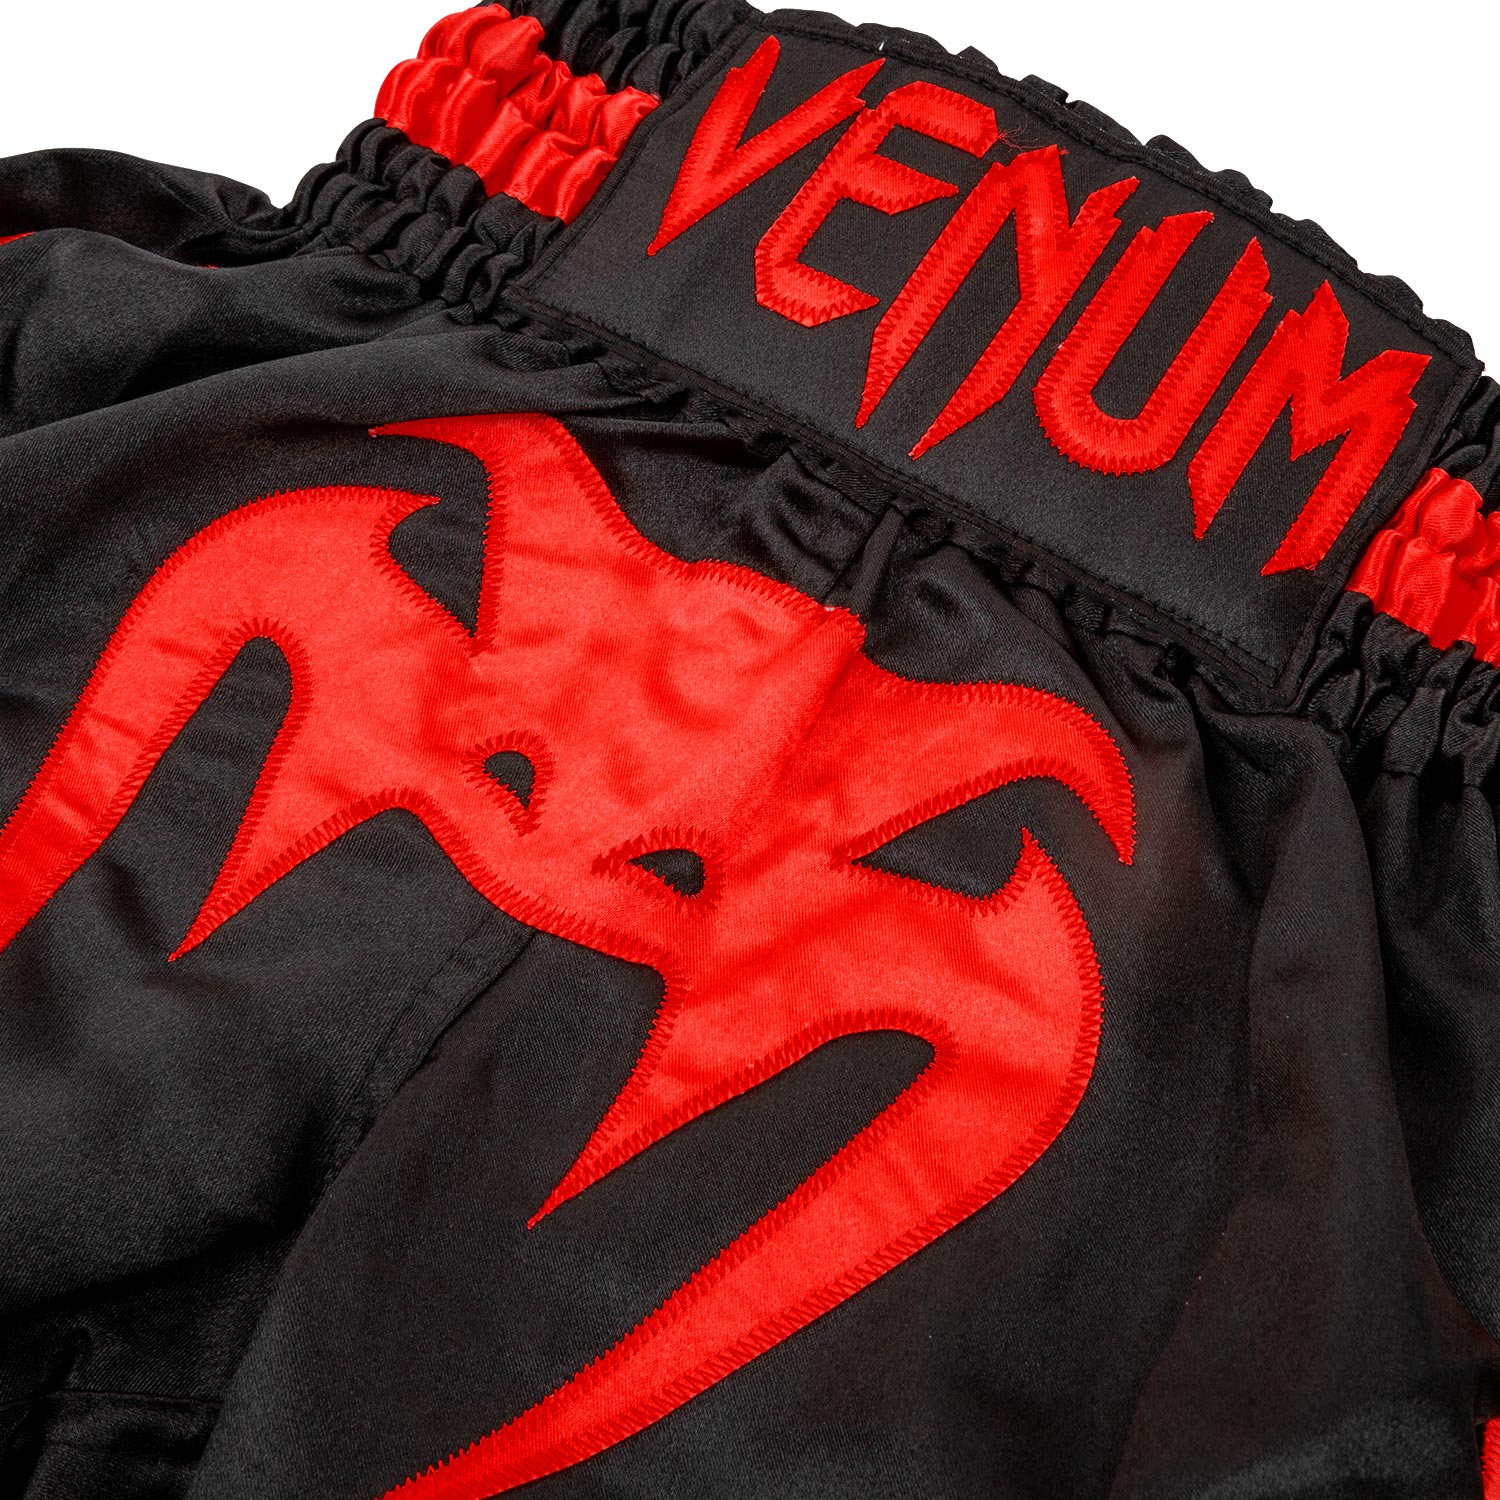 Pantalon Muay Thai Infantil Venum Giant Negro / Rojo